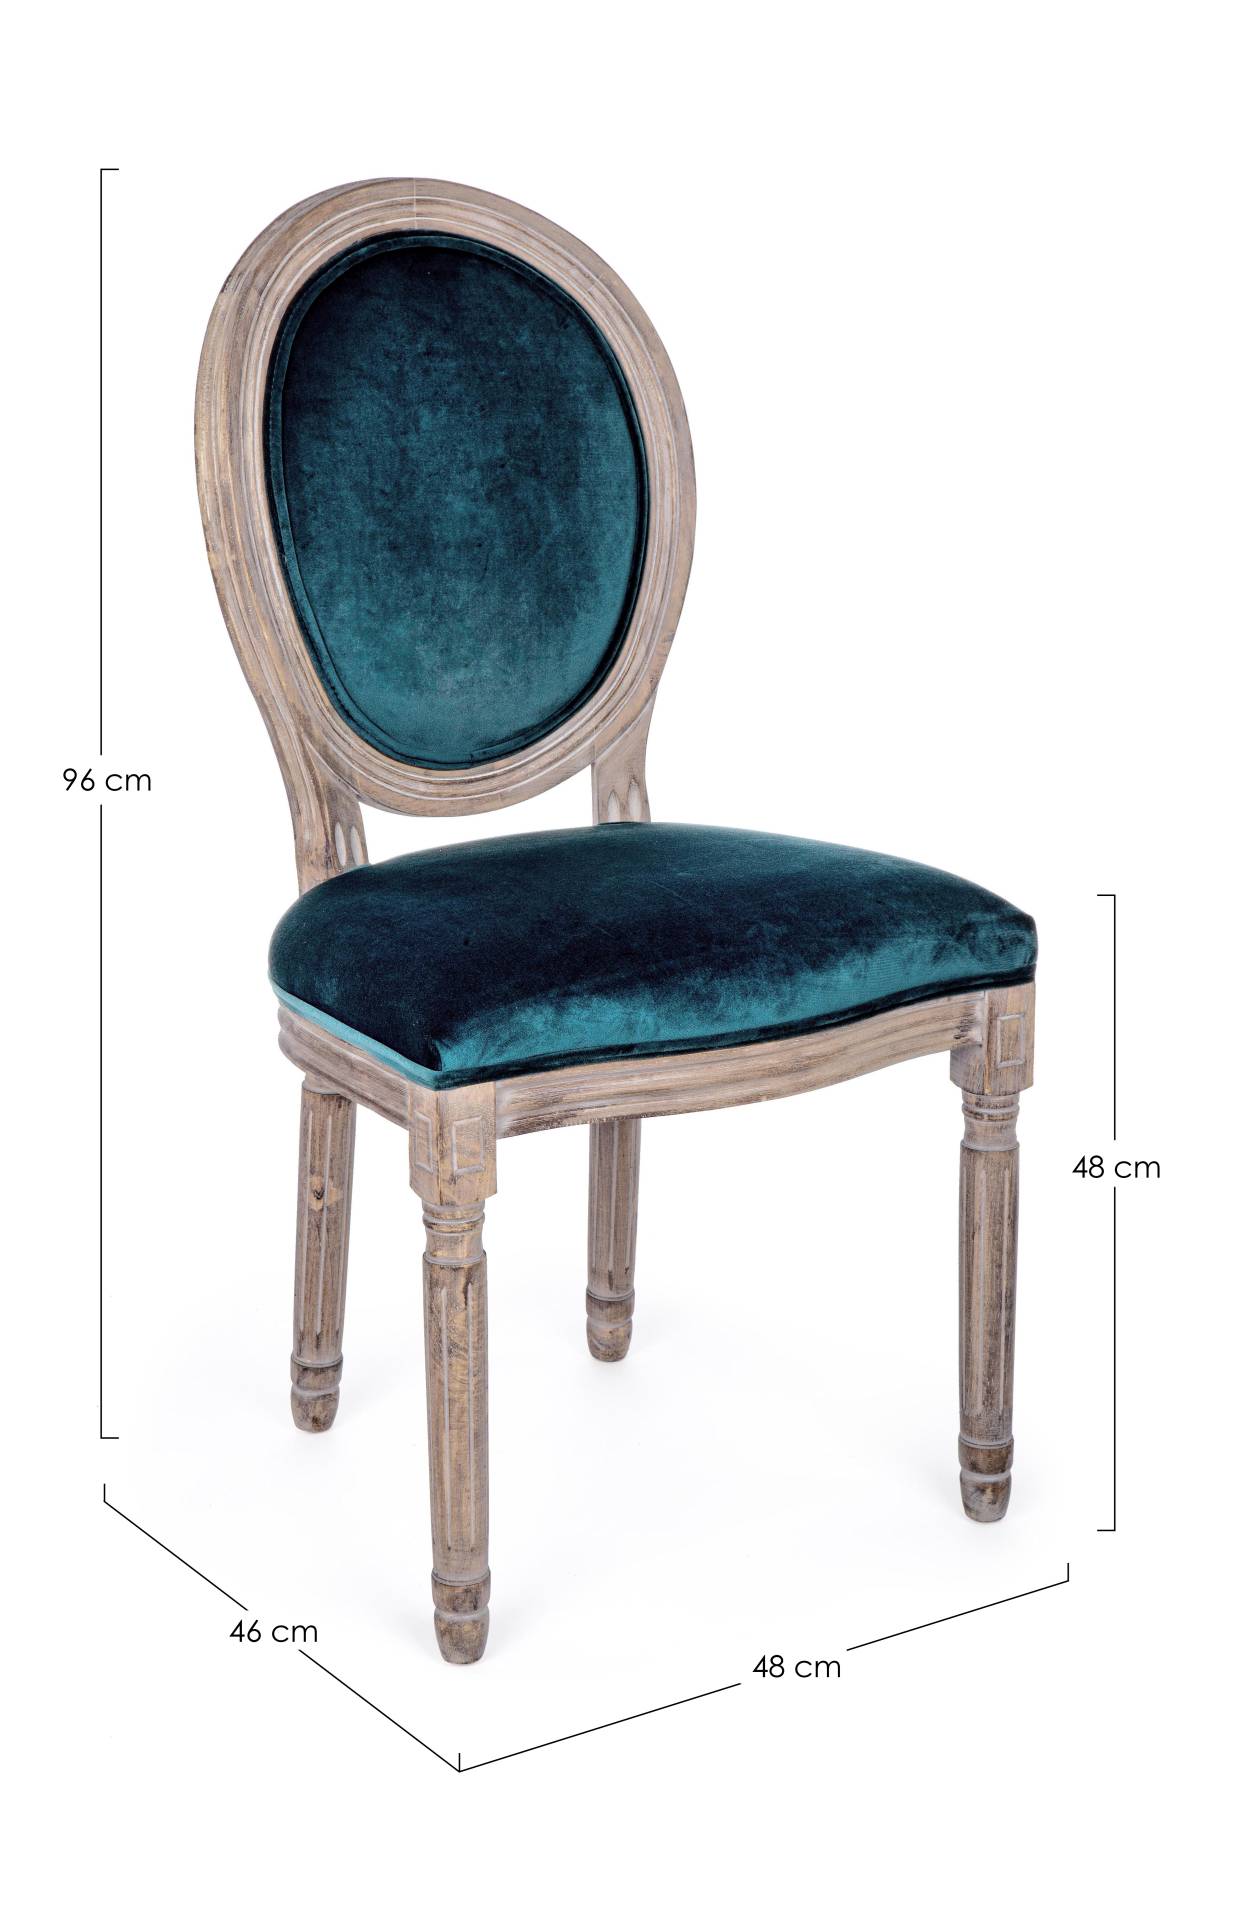 Der Stuhl Mathilde überzeugt mit seinem klassischem Design gefertigt wurde der Stuhl aus Birkenholz, welches natürlich gehalten ist. Die Sitz- und Rückenfläche ist aus einem Stoff-Bezug, welcher einen blauen Farbton besitzt und in einer Samt-Optik ist. Di